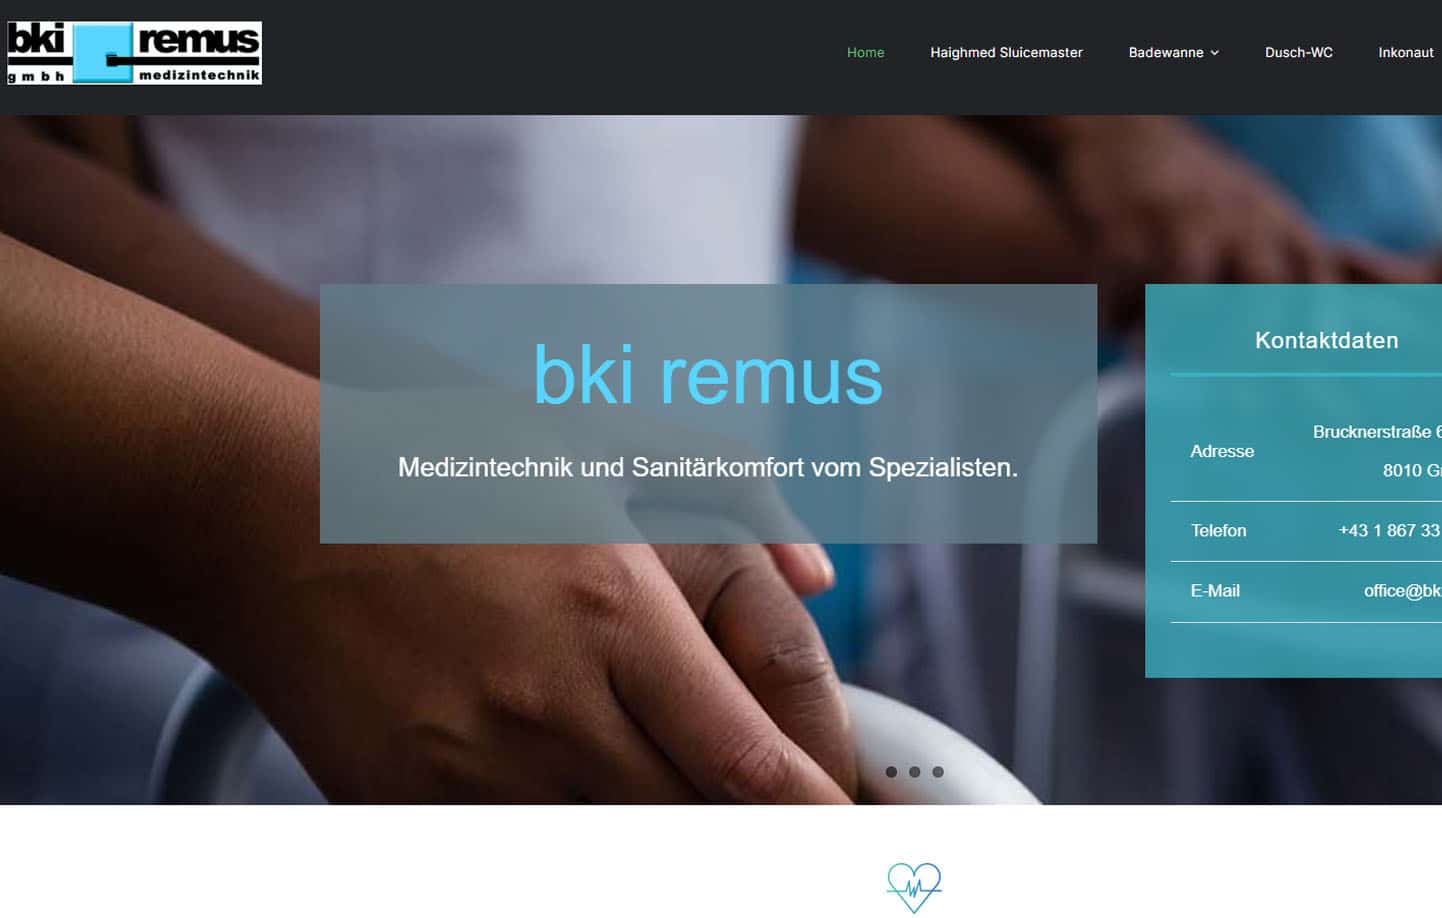 BKI Remus Medizintechnik in Graz und Wien